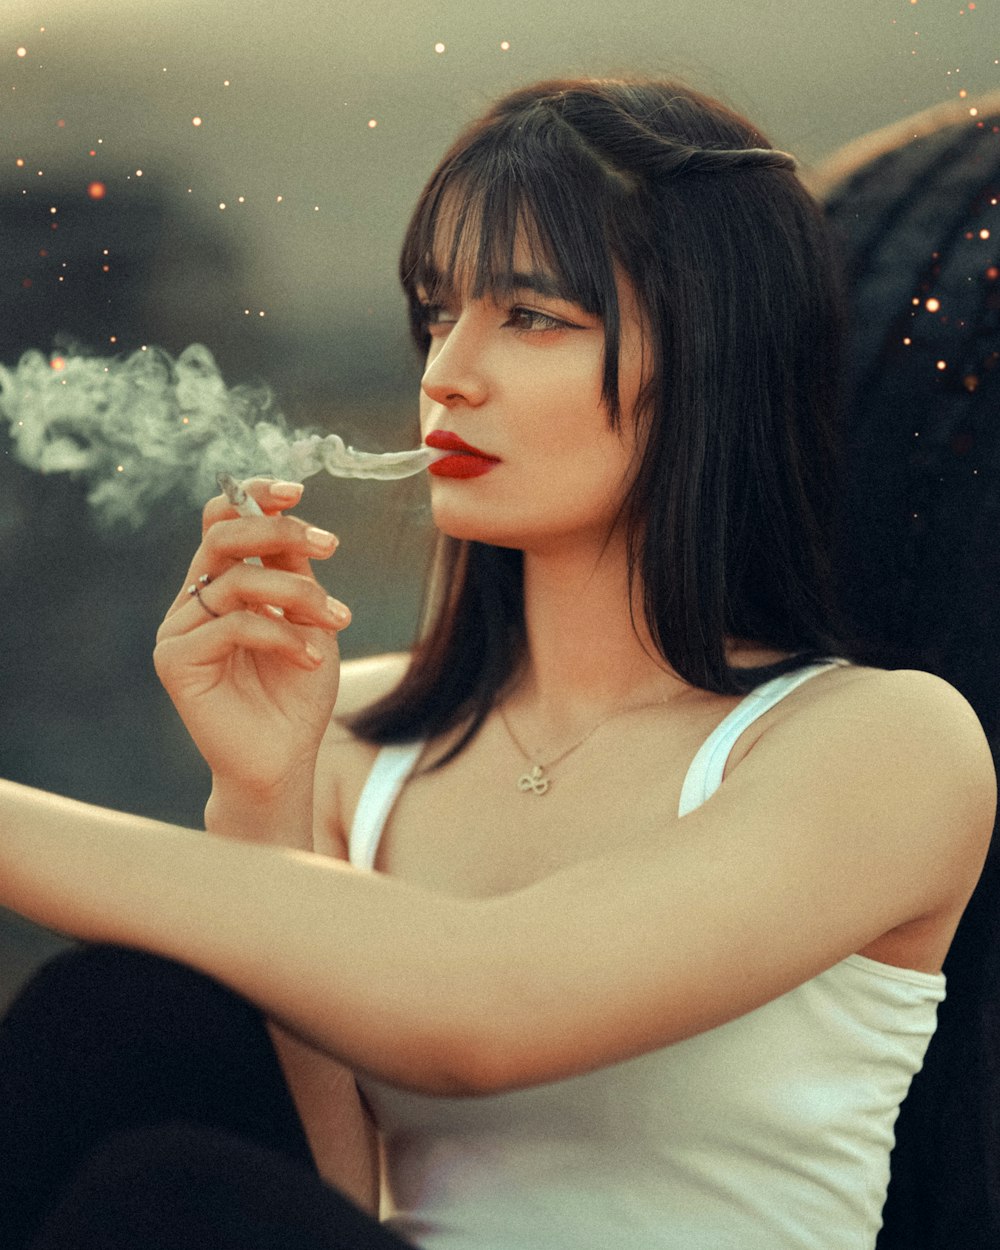 a woman sitting down smoking a cigarette